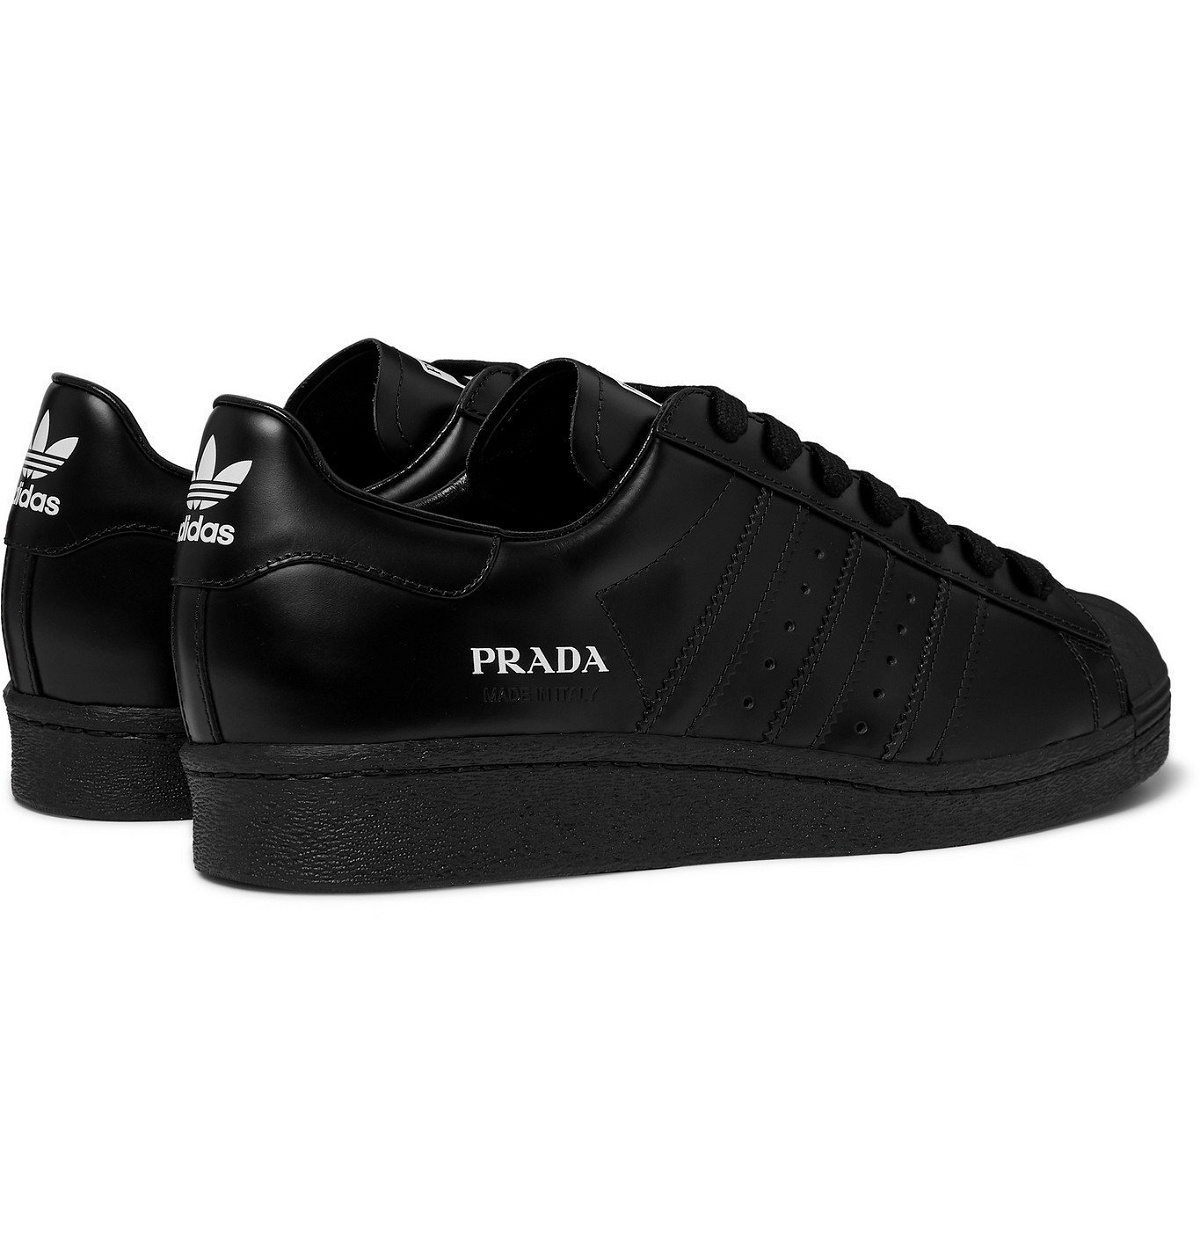 adidas Consortium - Prada Superstar 450 Leather Sneakers - Black adidas  Consortium